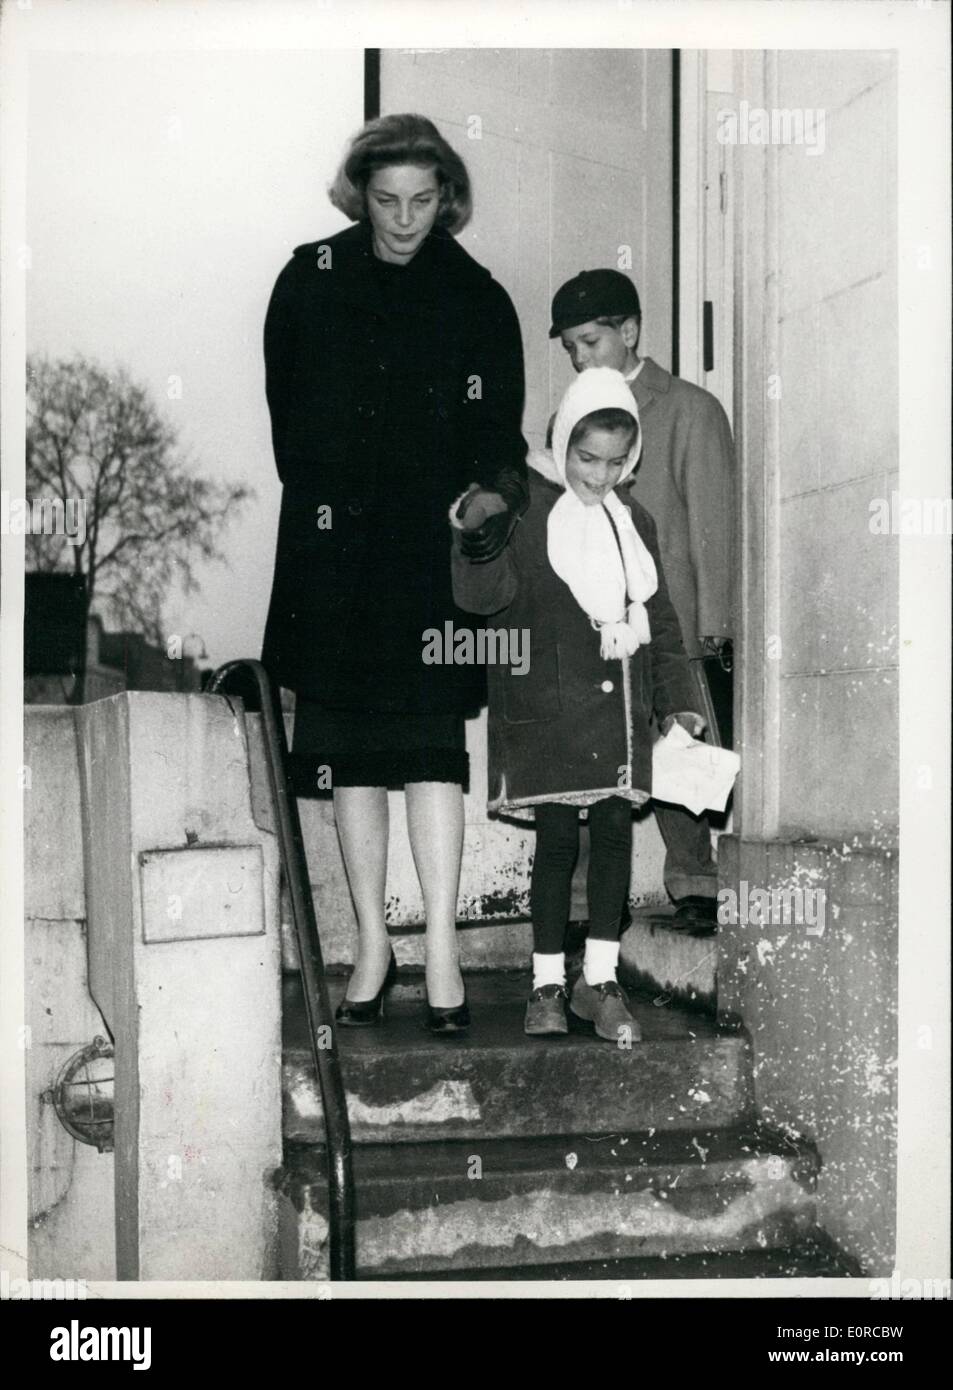 1. Januar 1959 - begleitet Lauren Bacall ihre Kinder zur Schule. in London. Lauren Bacall, wer hier einen Film zu machen und wer plant, ihren ständigen Wohnsitz in London zu machen. war gestern zu begleiten ihre beiden Kinder, Stephen (10) und Lesley (6), die amerikanische Schule, Gloucester Gate, Regents Park zu sehen. Ihre Heimat ist in Cadogan Square. Keystone Foto Hinweis: Gut verpackt gegen die Kälte in London. Lauren Bacall mit Stephen und Lesley am Weg zur Schule. JSS/Keystone Stockfoto